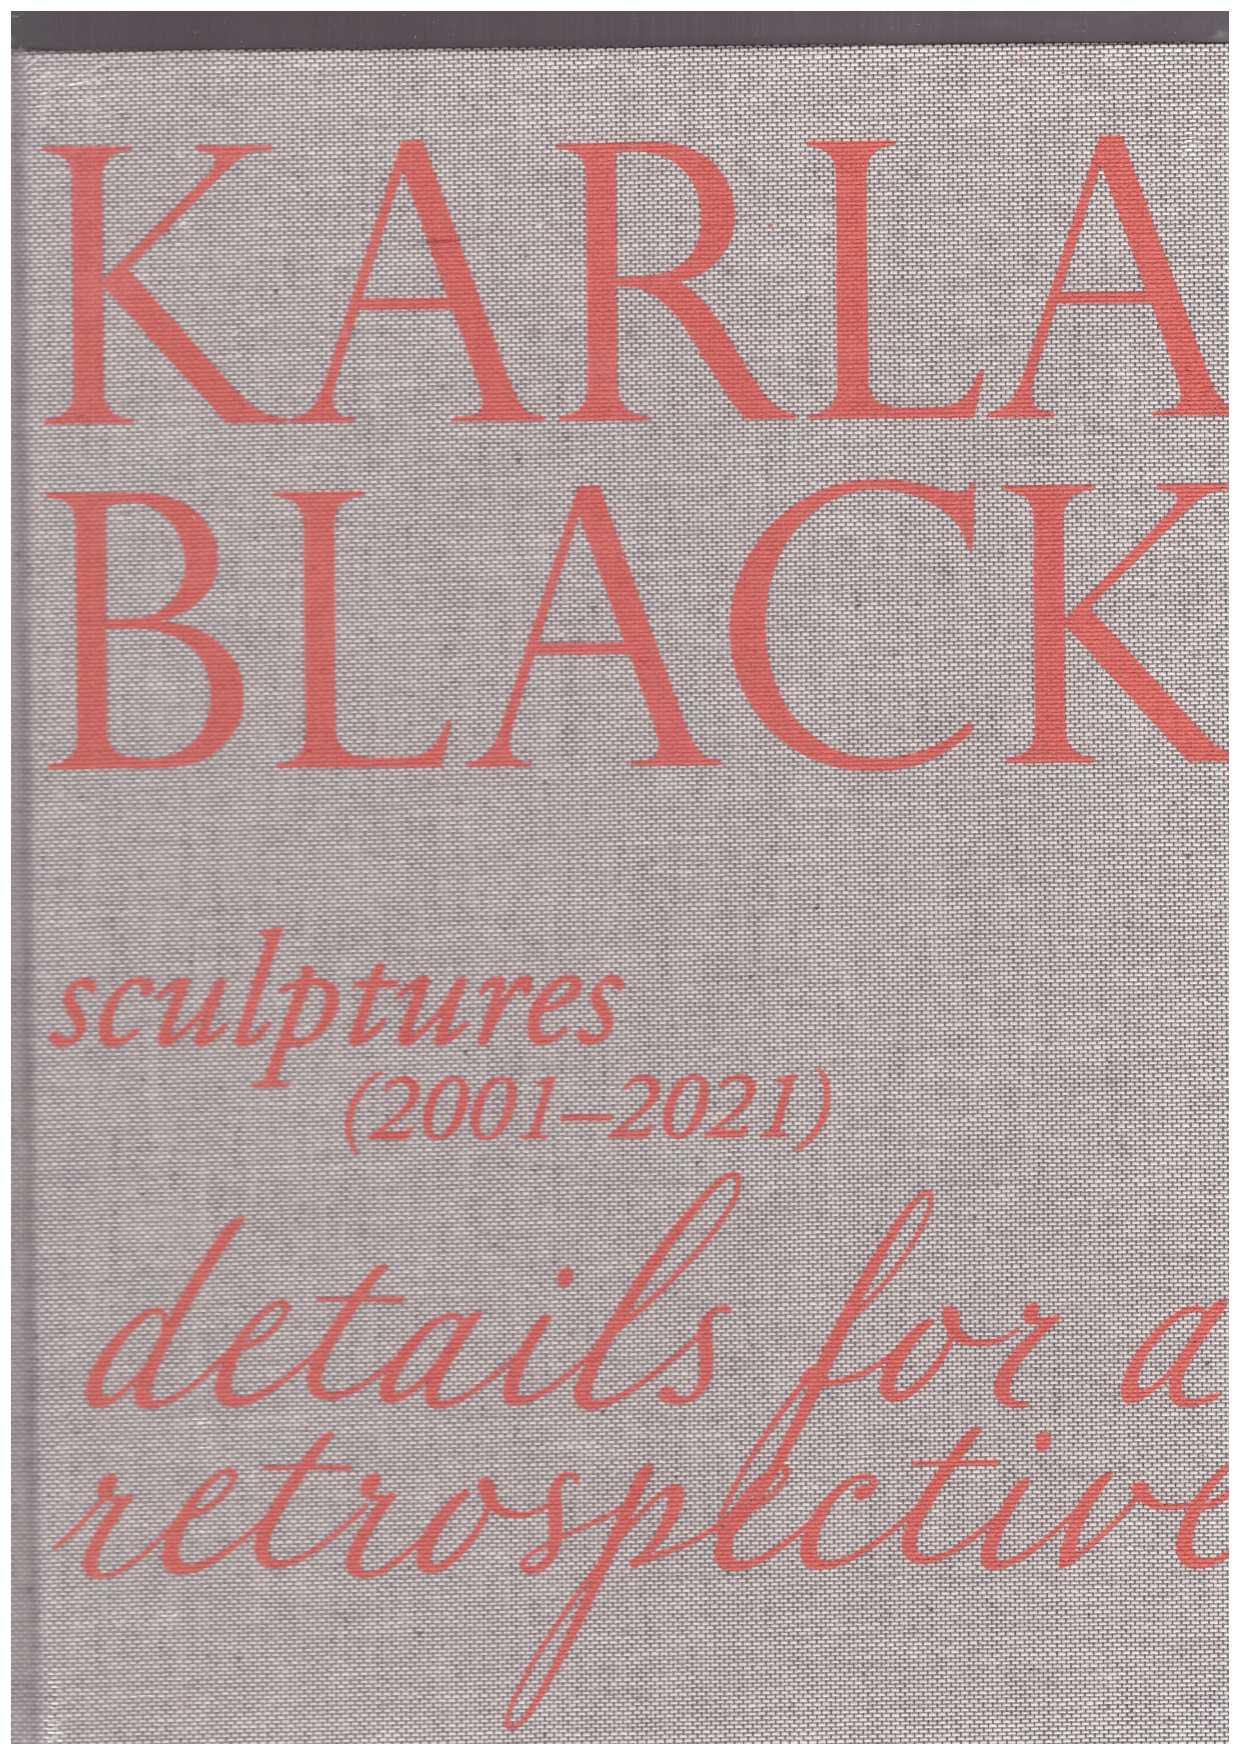 BLACK, Karla; BRADLEY, Fiona (ed.) - Karla Black: Sculptures (2001–2021). Details for a Retrospective